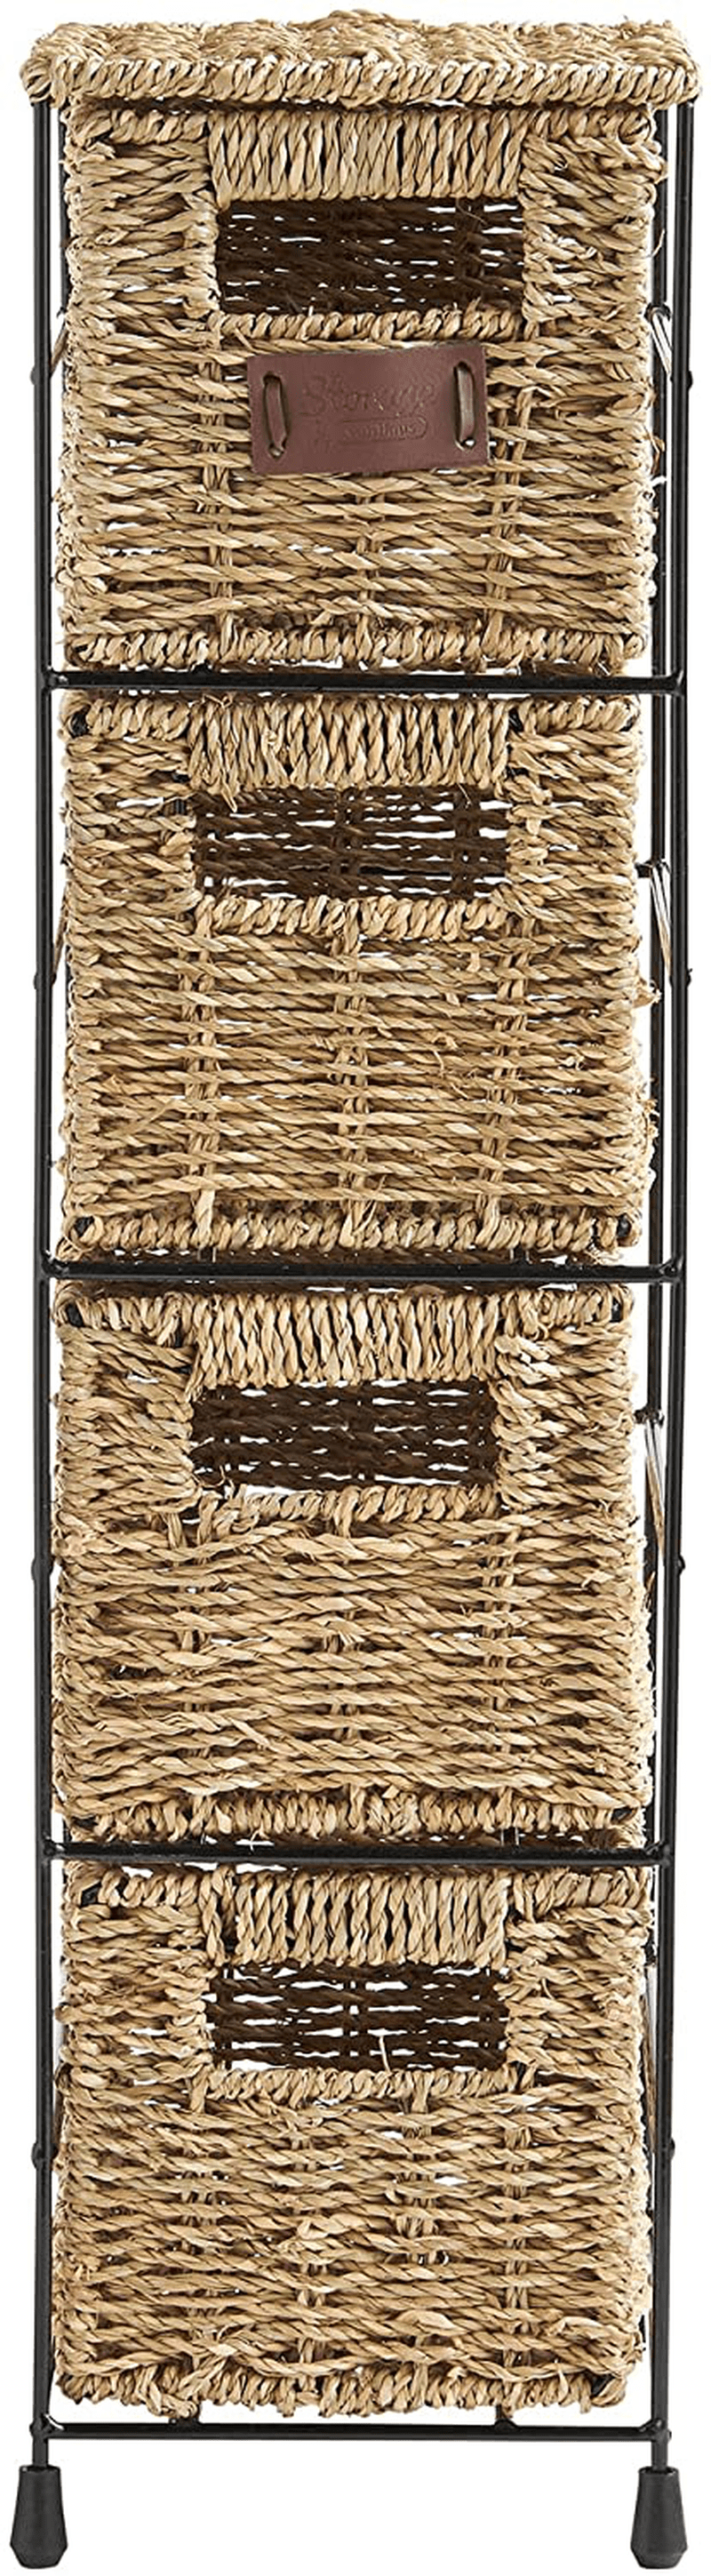 VonHaus 4 Tier Small Seagrass Basket Storage Tower Unit with Metal Frame - Ideal for Small Bathrooms & Home Storage (25.4 x 9.5 x 6.7) Home & Garden > Household Supplies > Storage & Organization VonHaus   